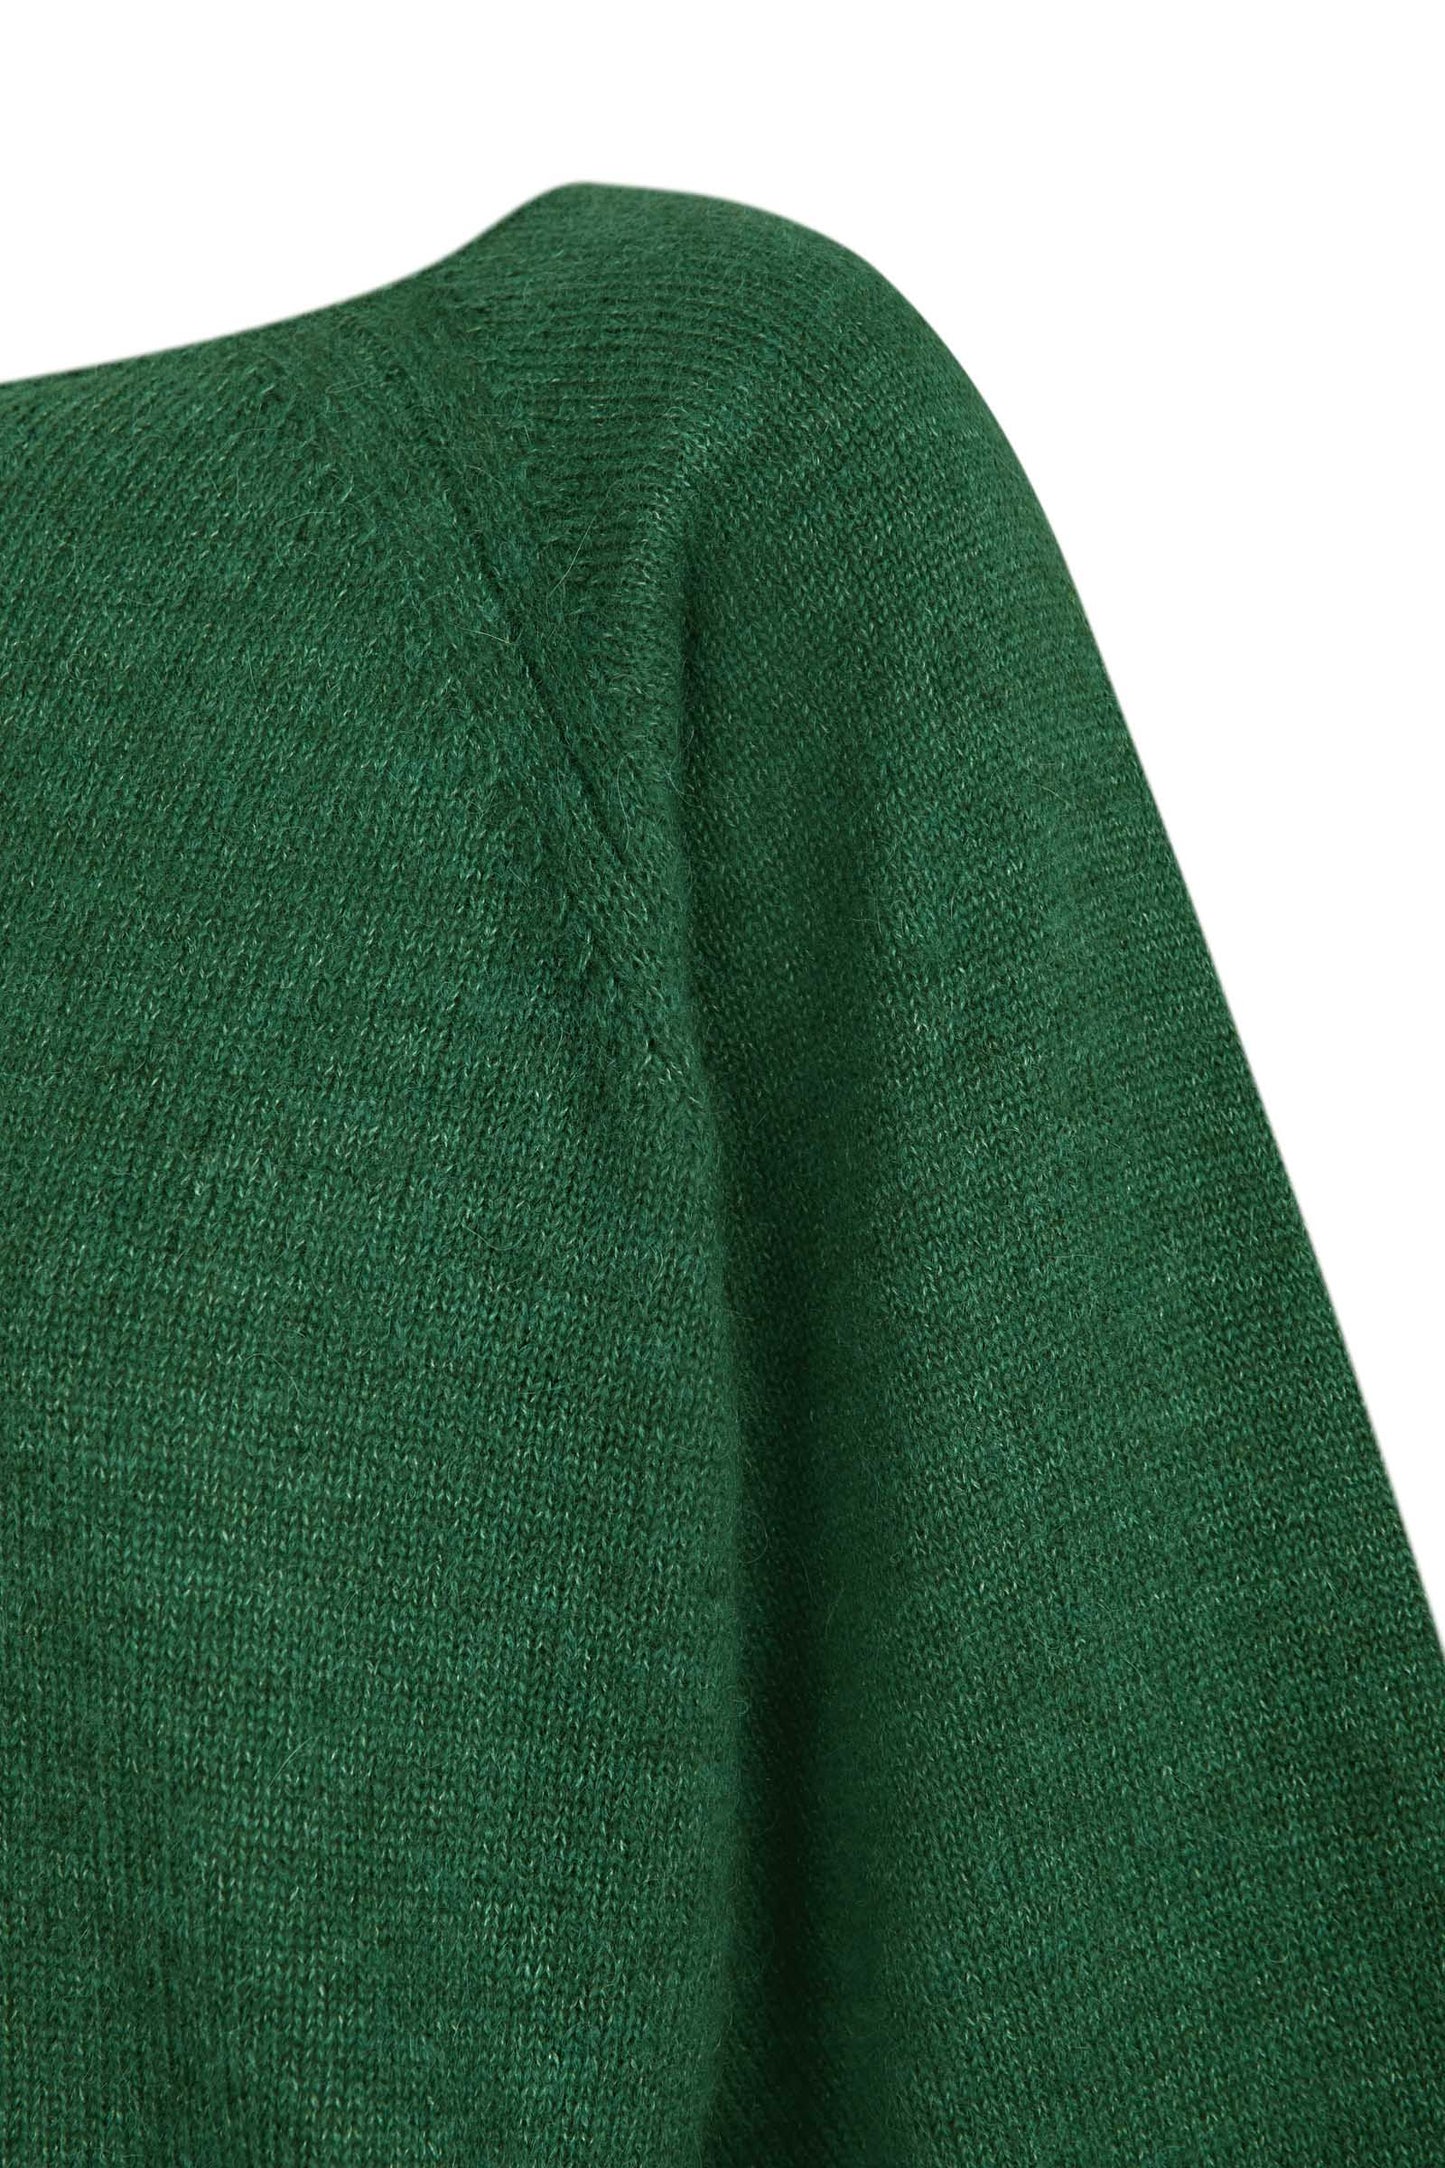 Marlon, jersey en baby alpaca y lana merino verde